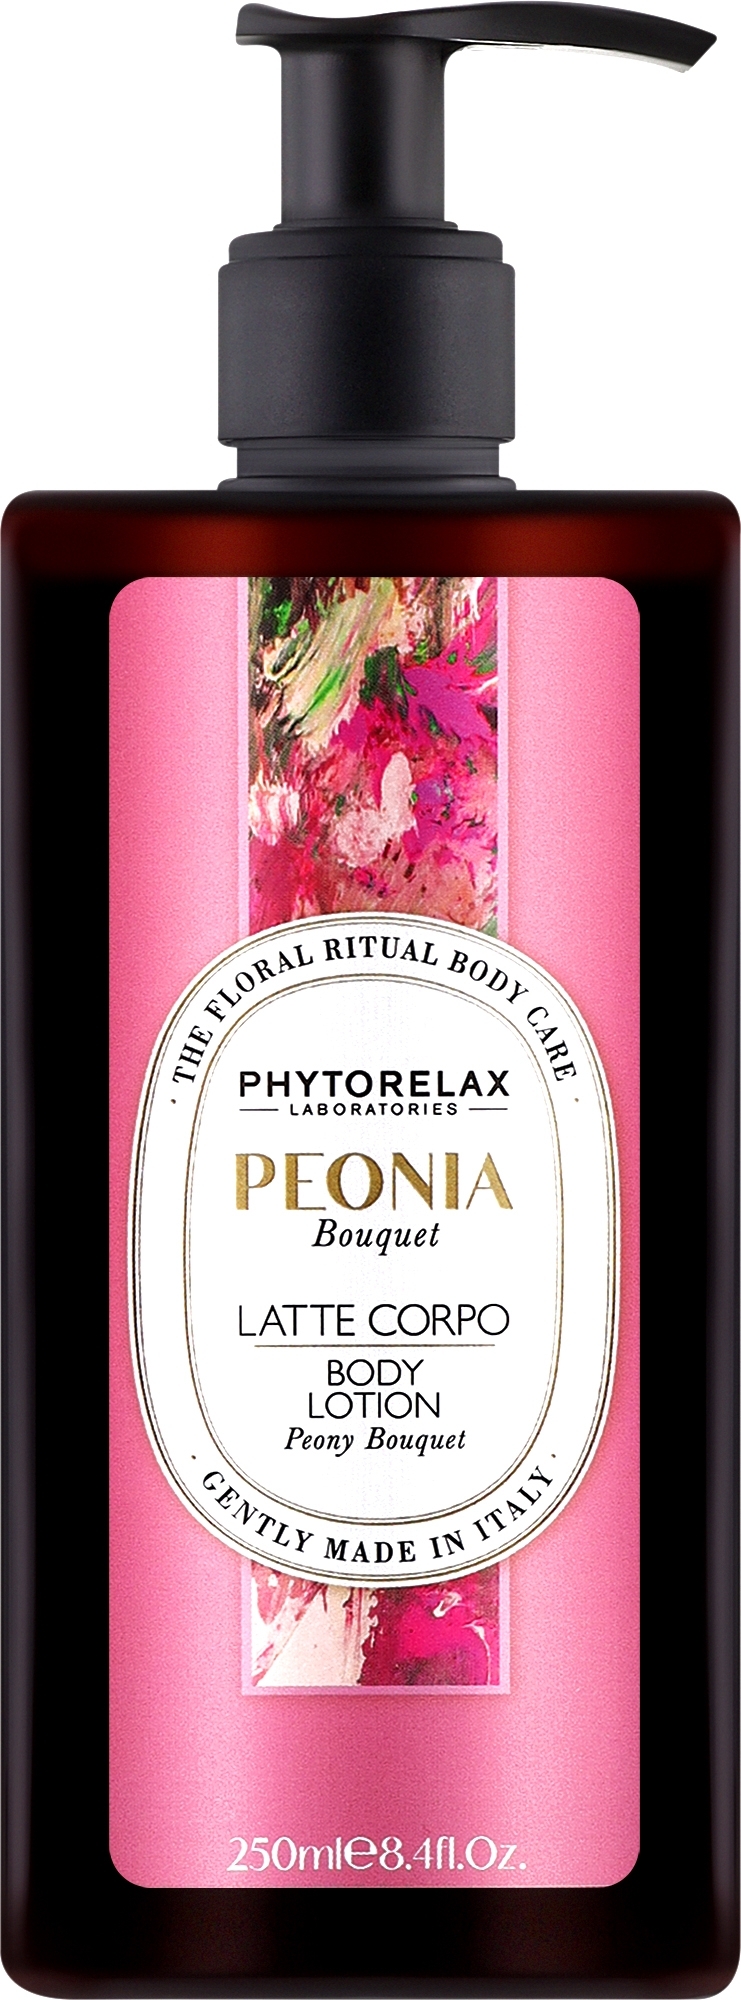 Лосьон для тіла "Peony Bouquet" - Phytorelax Laboratories Floral Ritual Body Lotion — фото 250ml